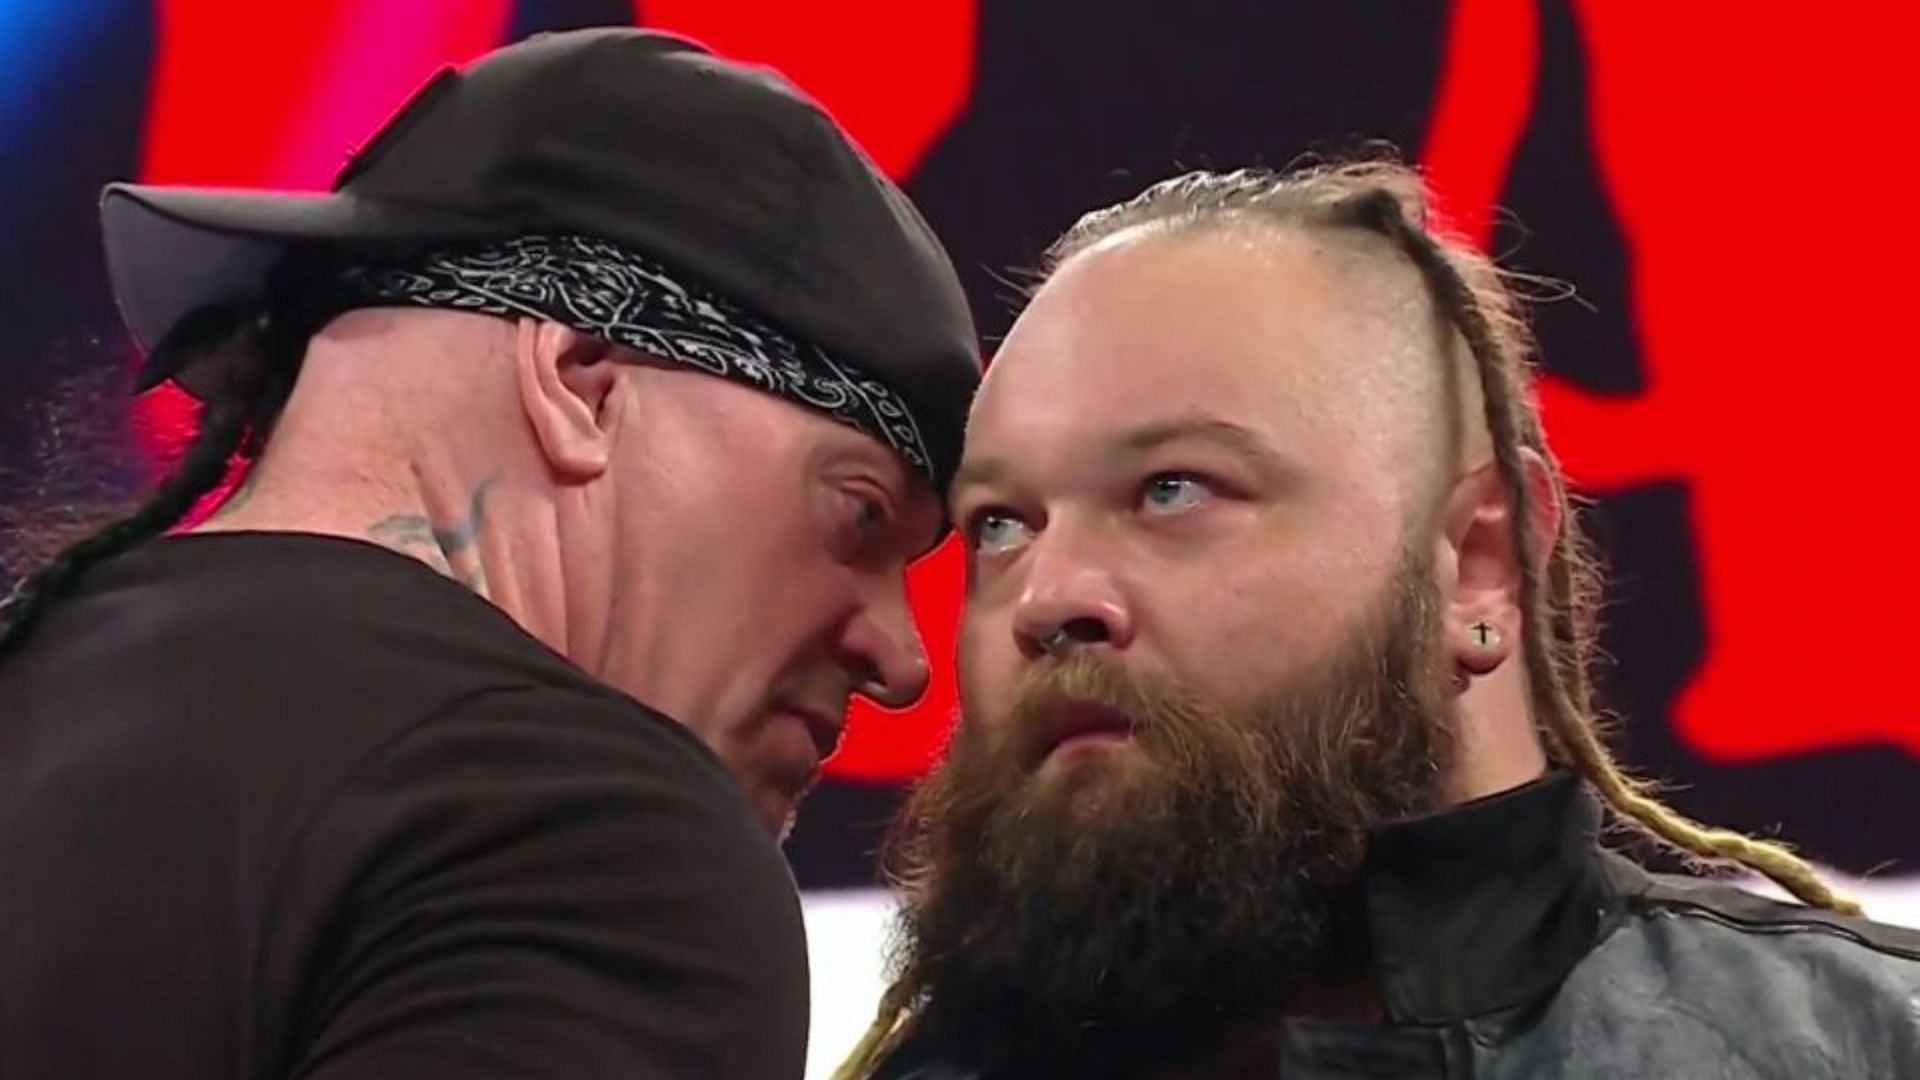 WWE Hall of Famer The Undertaker is a fan of Bray Wyatt